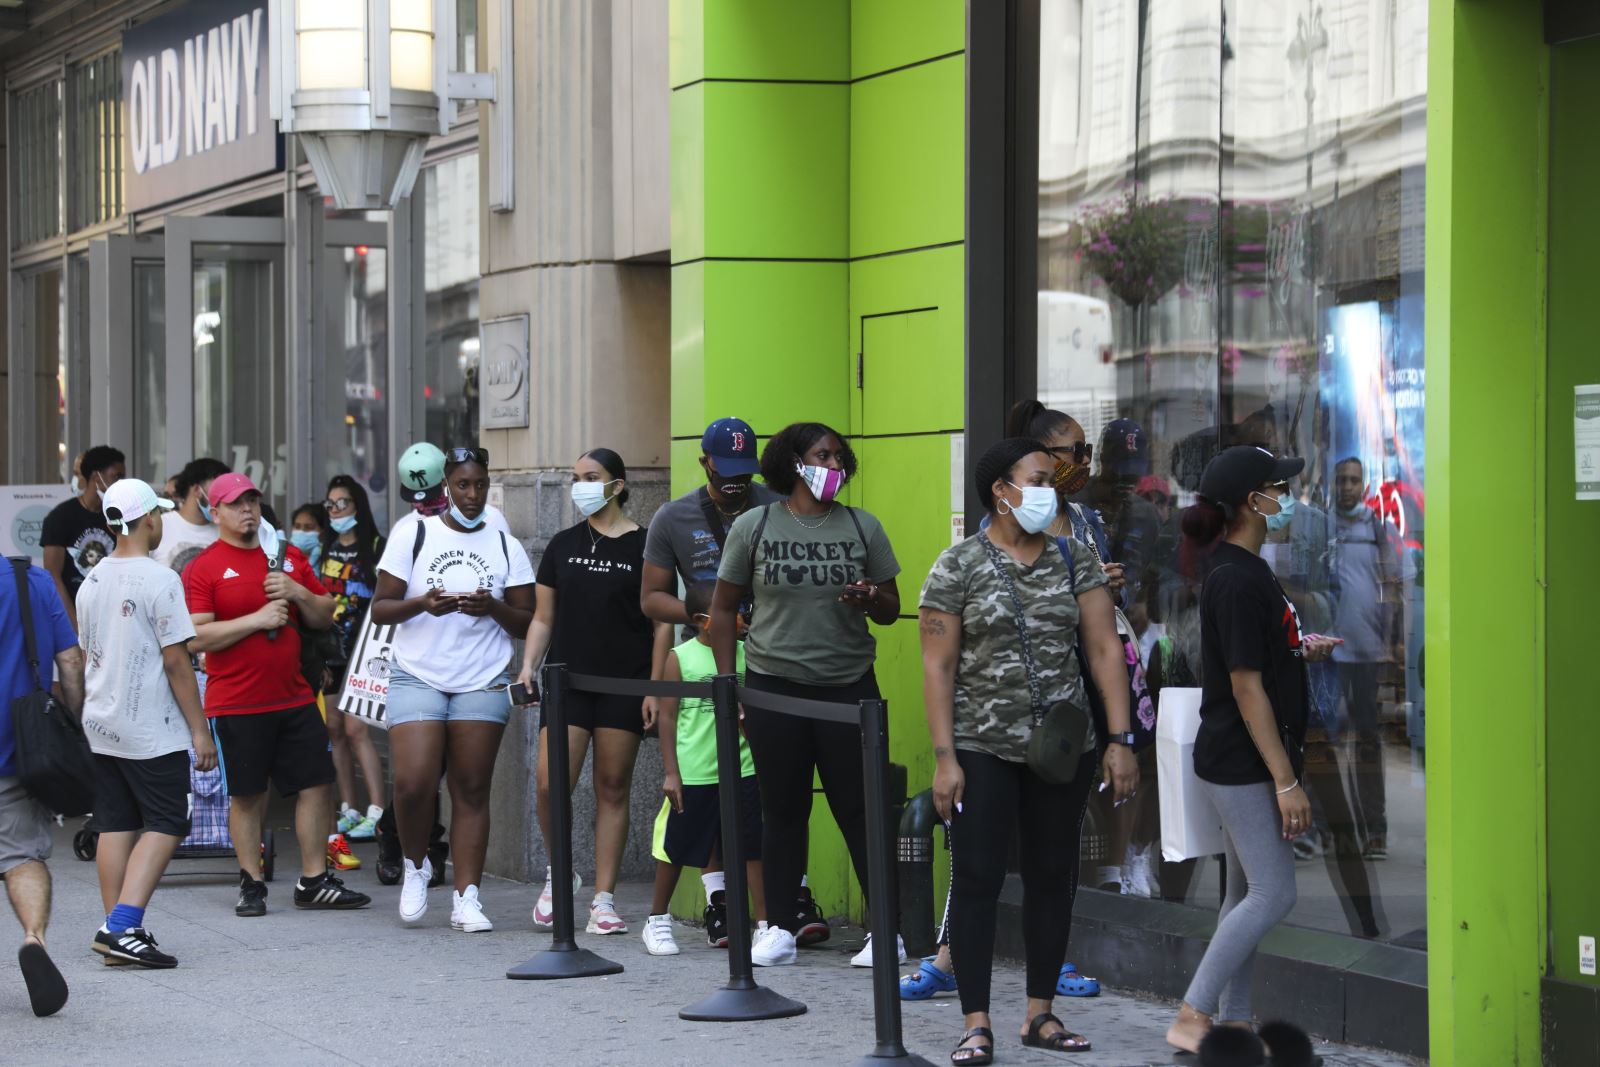  Người dân đeo khẩu trang phòng lây nhiễm COVID-19 khi xếp hàng bên ngoài một cửa hàng ở New York, Mỹ, ngày 14/7/2020. Ảnh: THX/ TTXVN